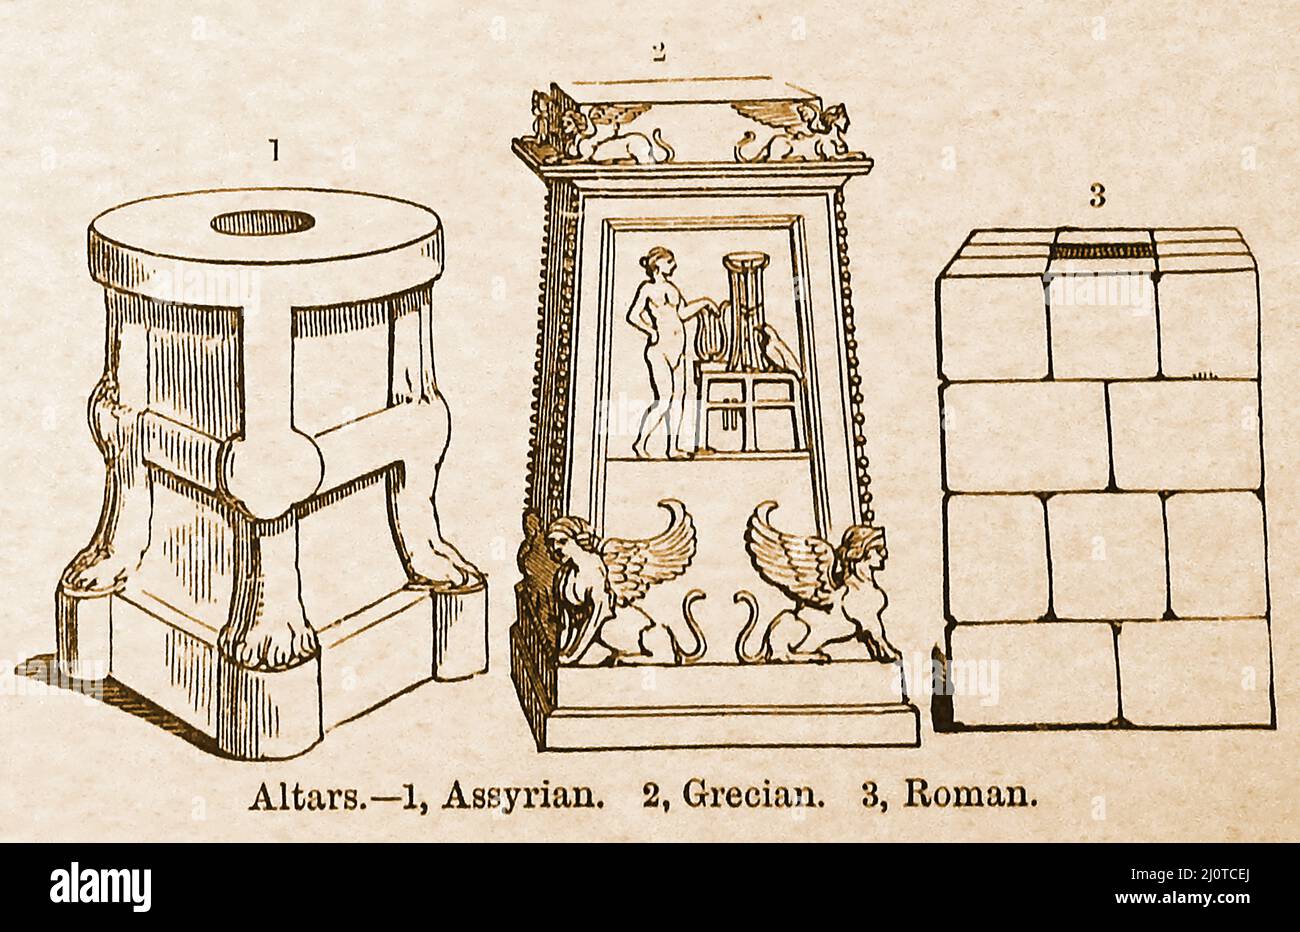 Une comparaison de 19th siècles entre les styles de 3 anciens autels., Assyrien, grec et romain Banque D'Images